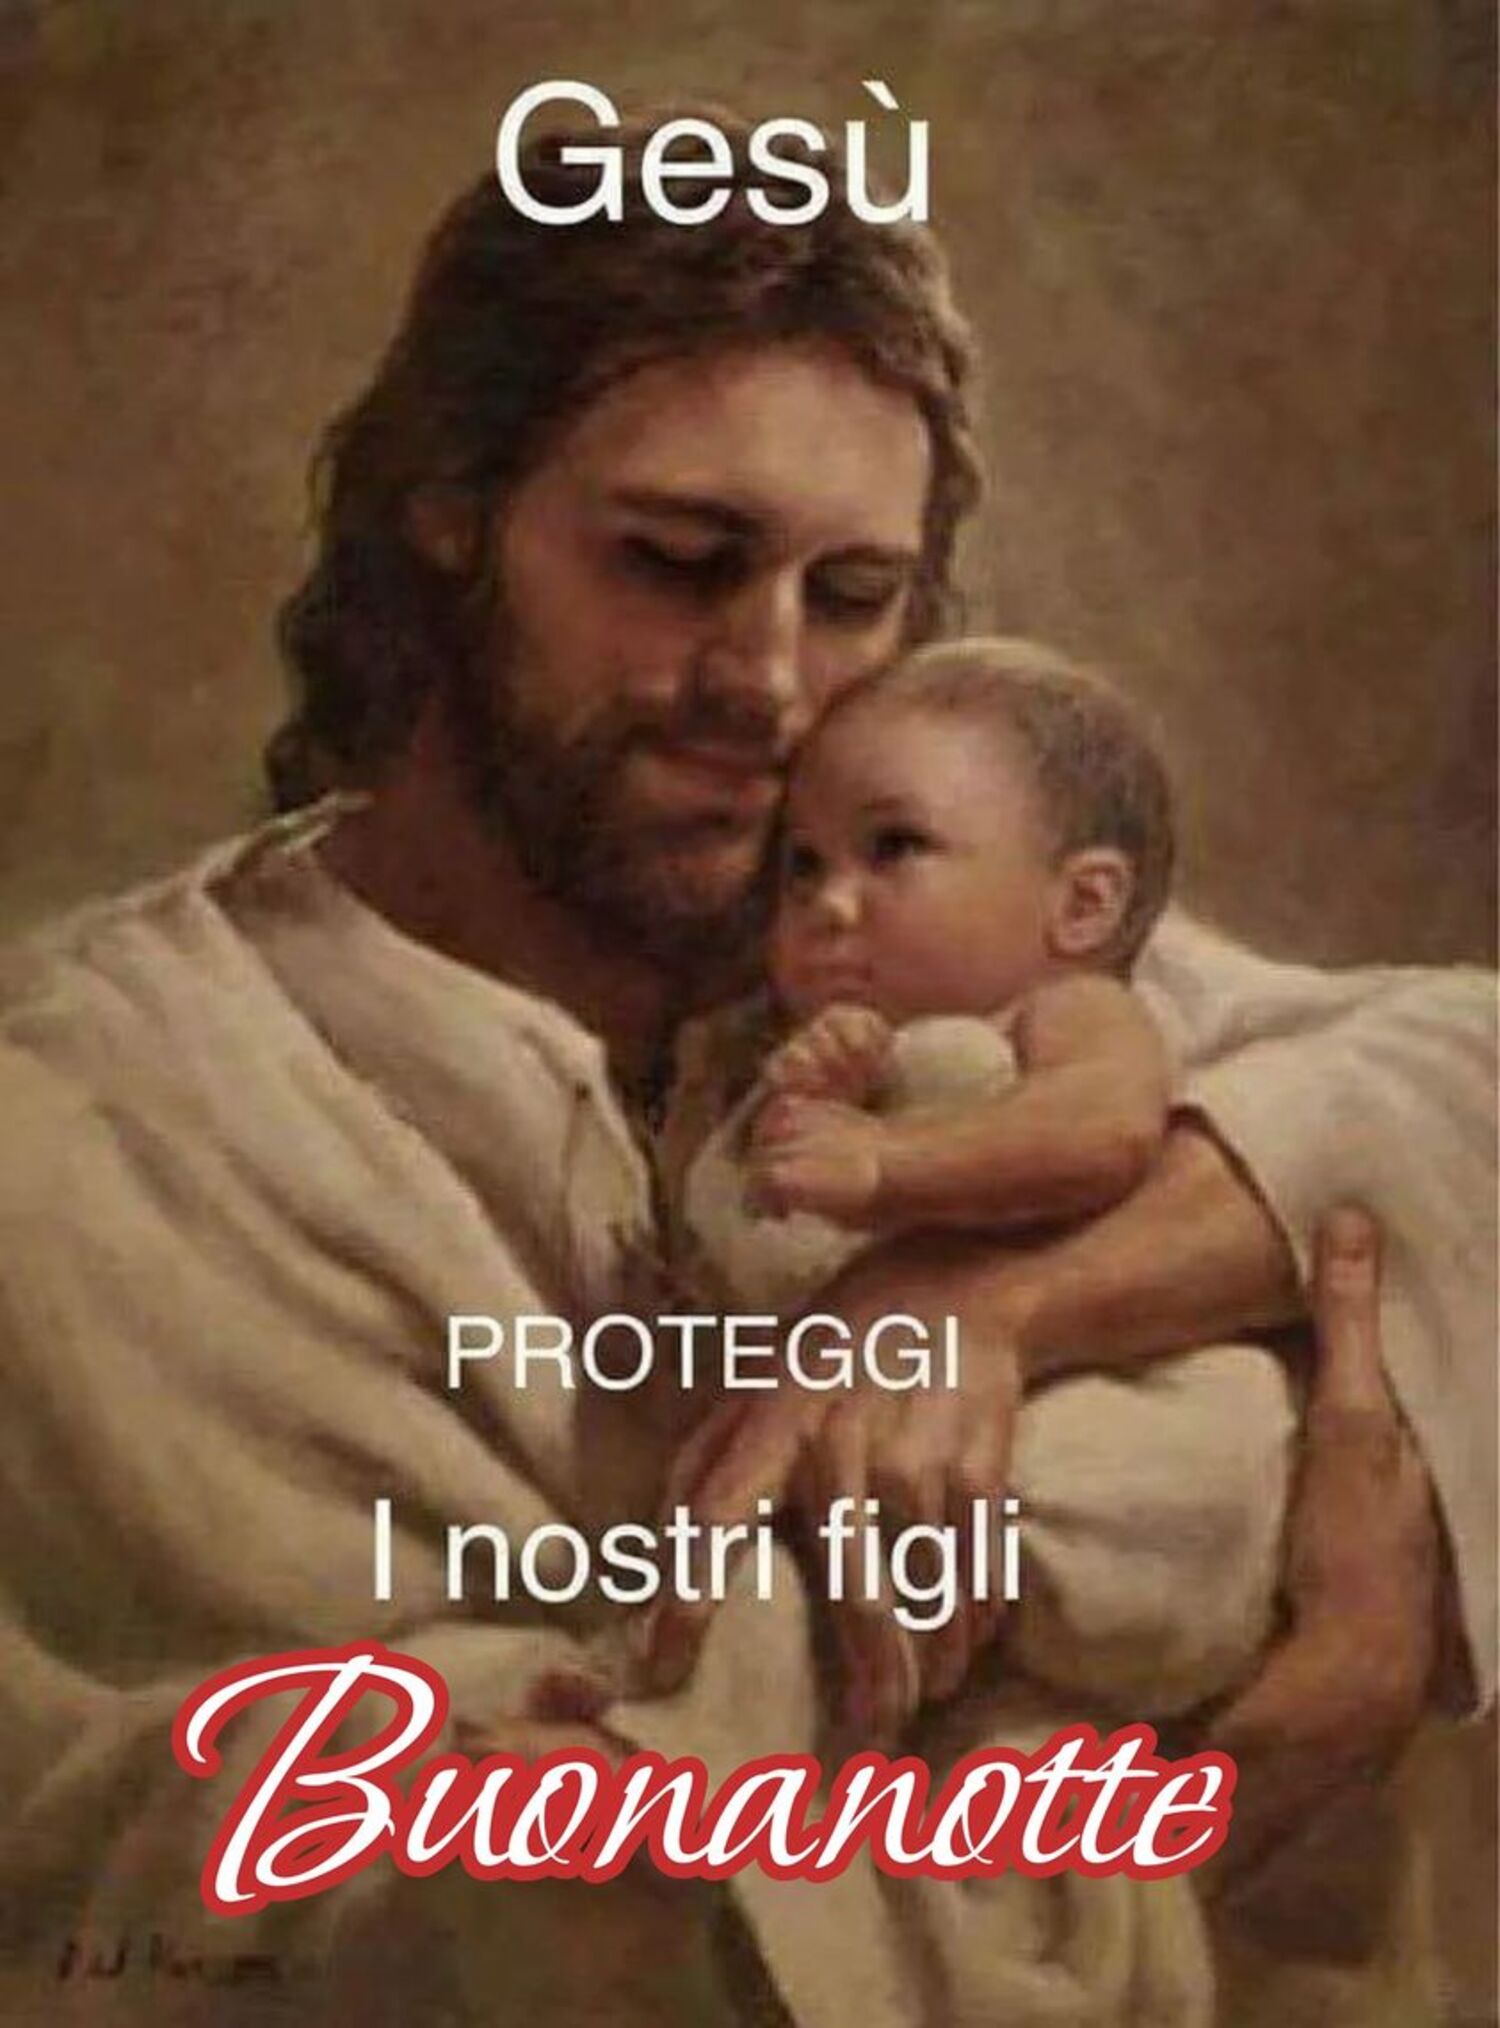 Gesù proteggi i nostri figli buonanotte